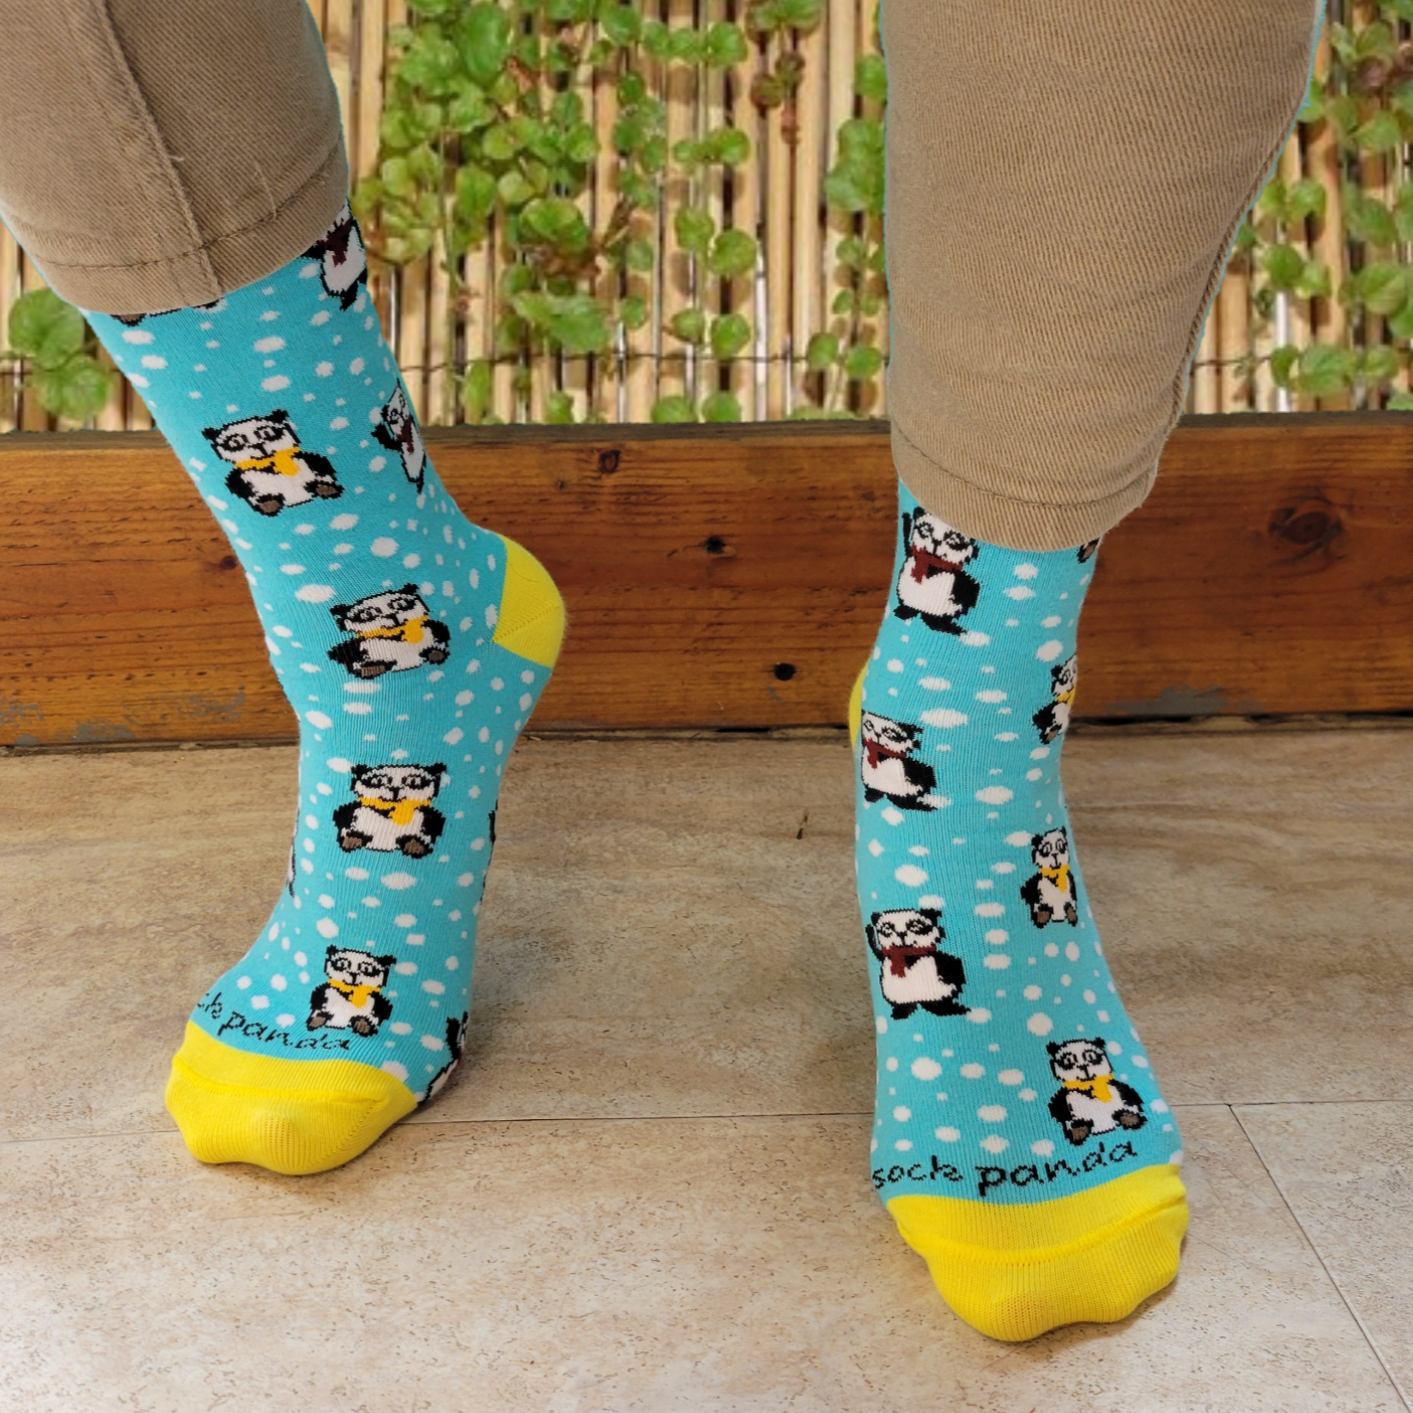 Winter Panda Pattern Socks from the Sock Panda (Adult Medium)